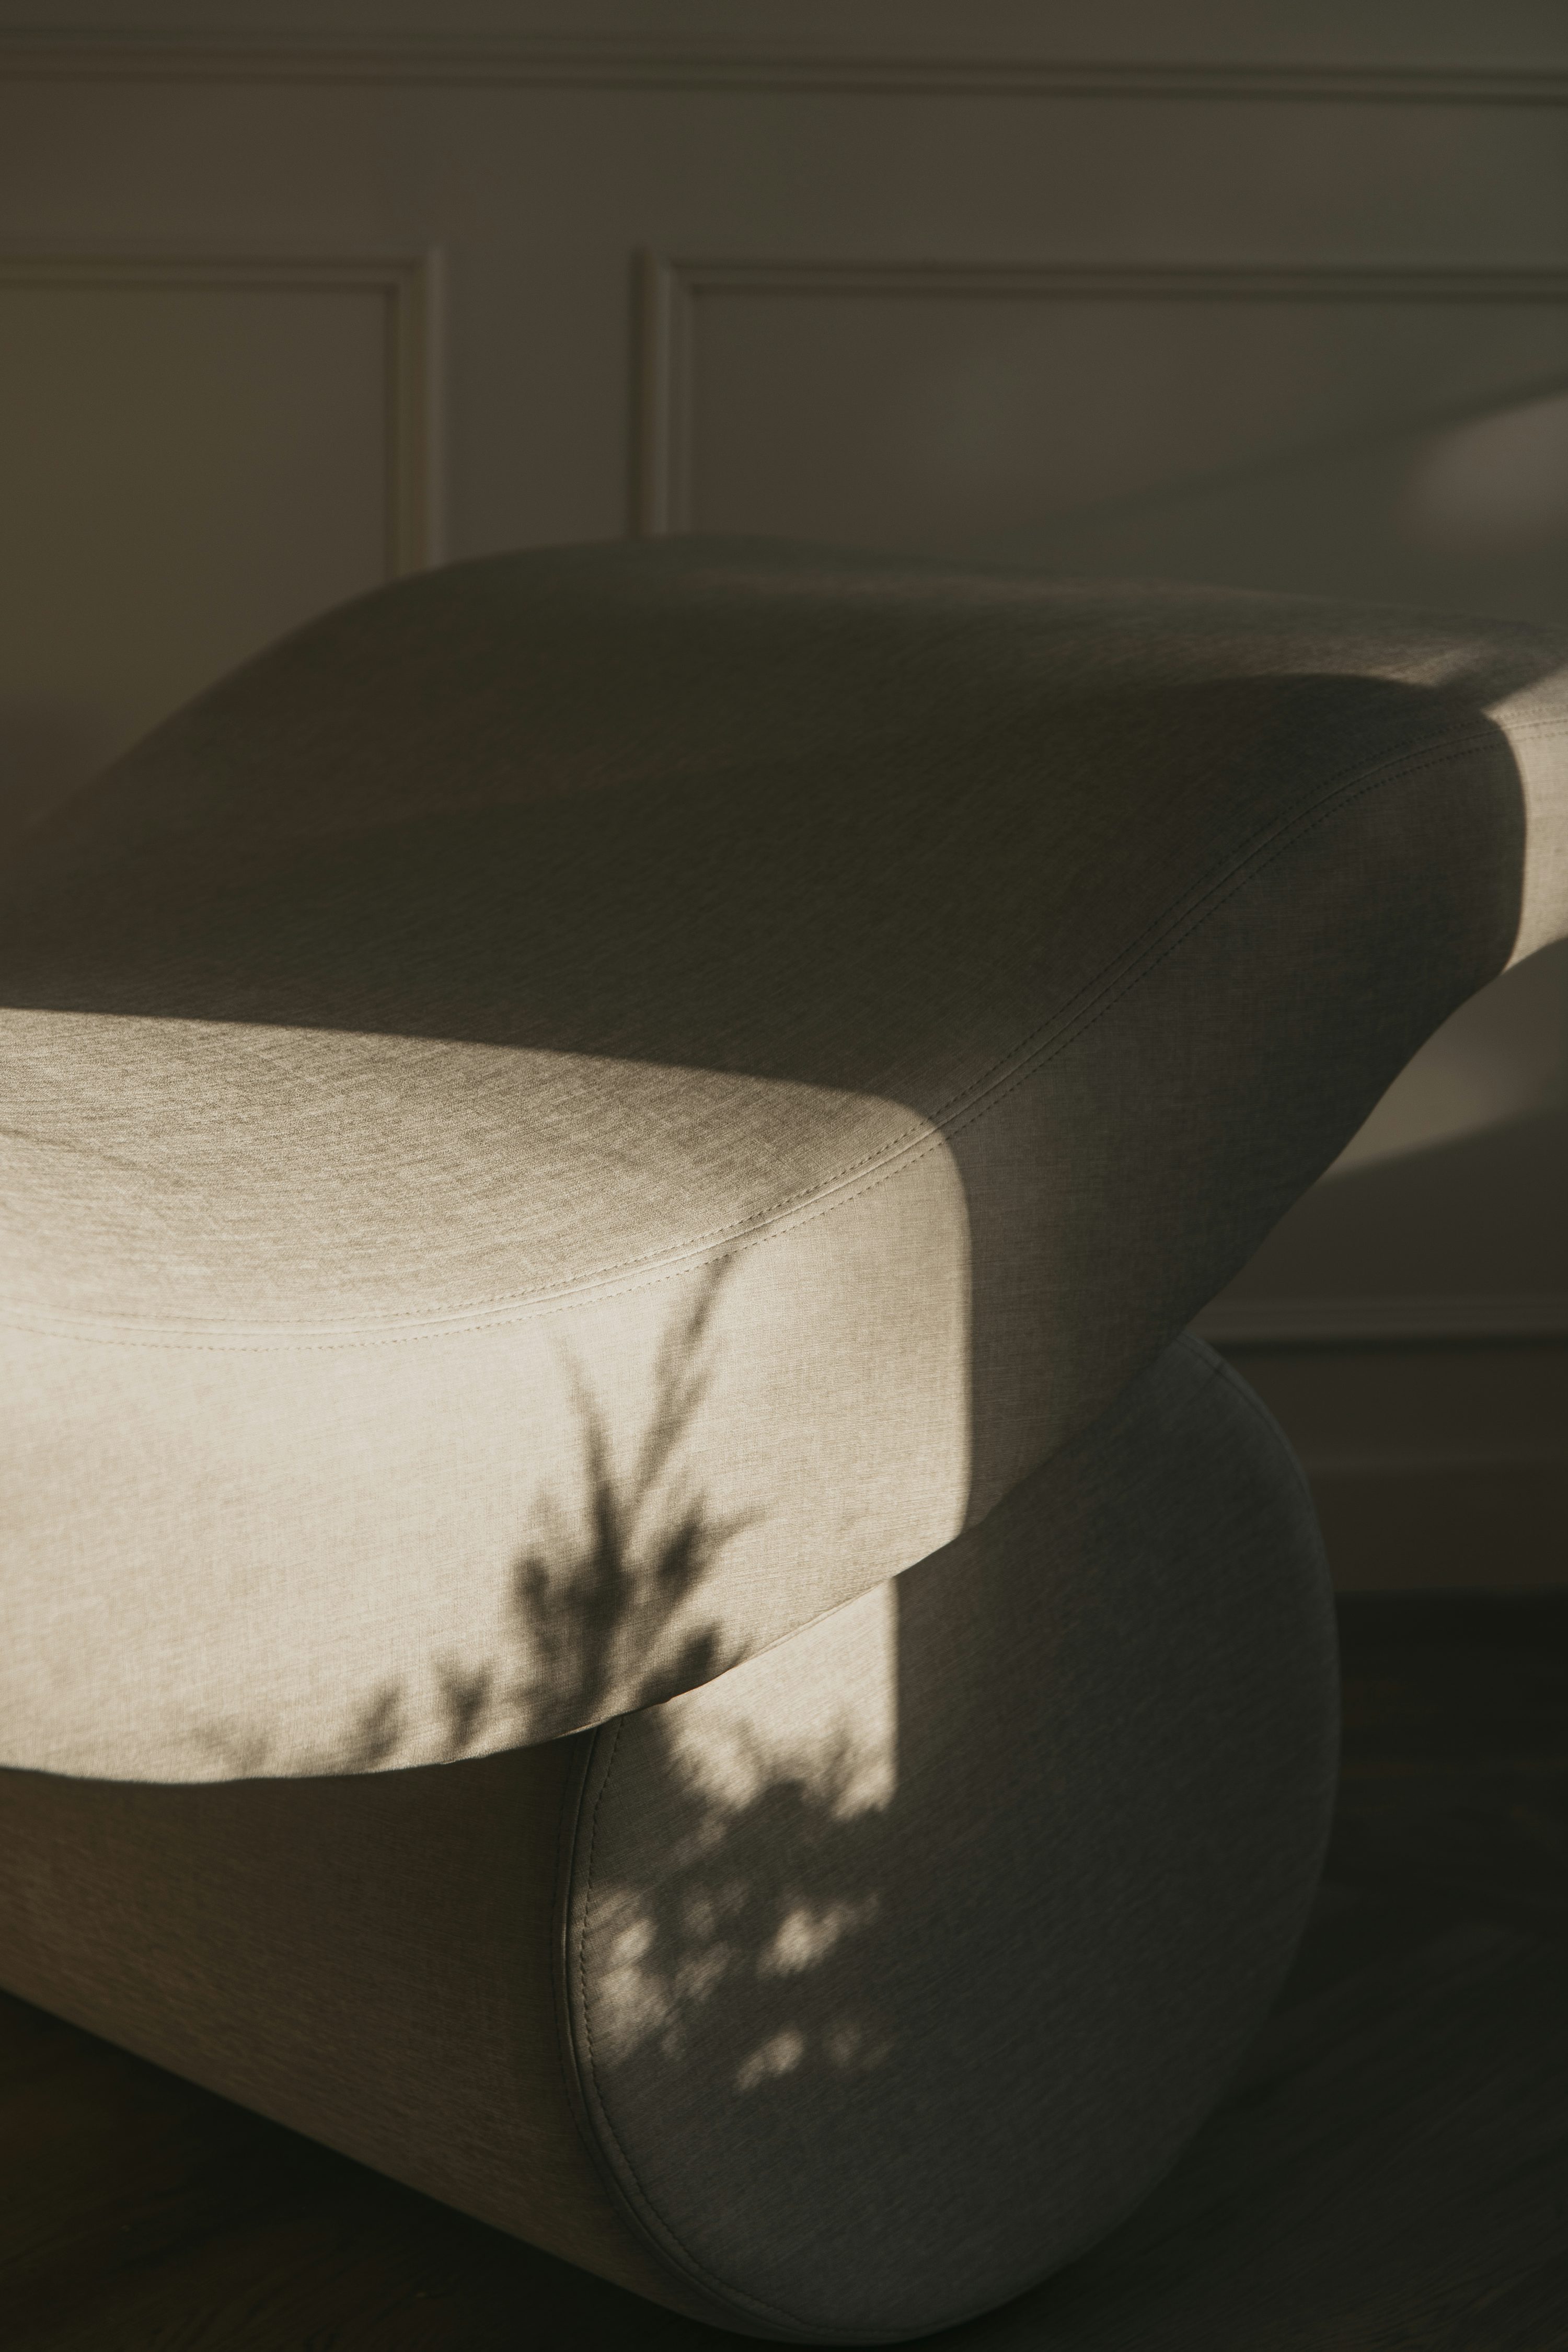 der Schatten einer Pflanze auf der Stuhllehne